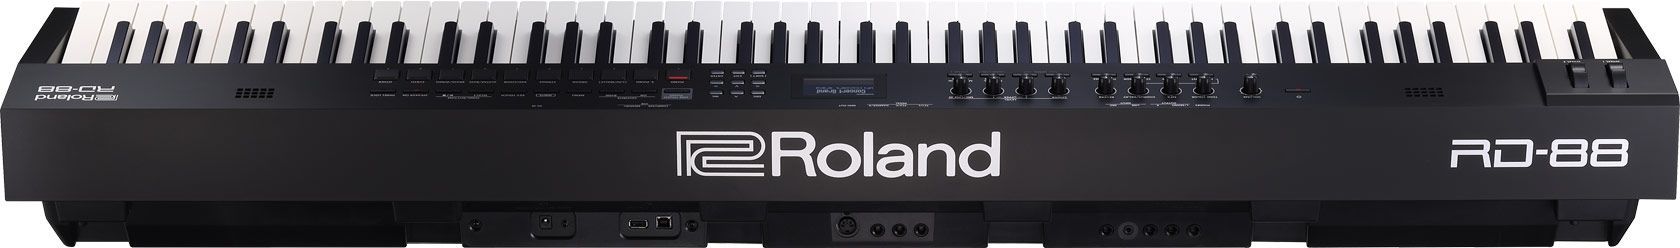 Roland RD-88 Stagepiano mit riesiger Soundauswahl, PHA 4 Hammermechanik